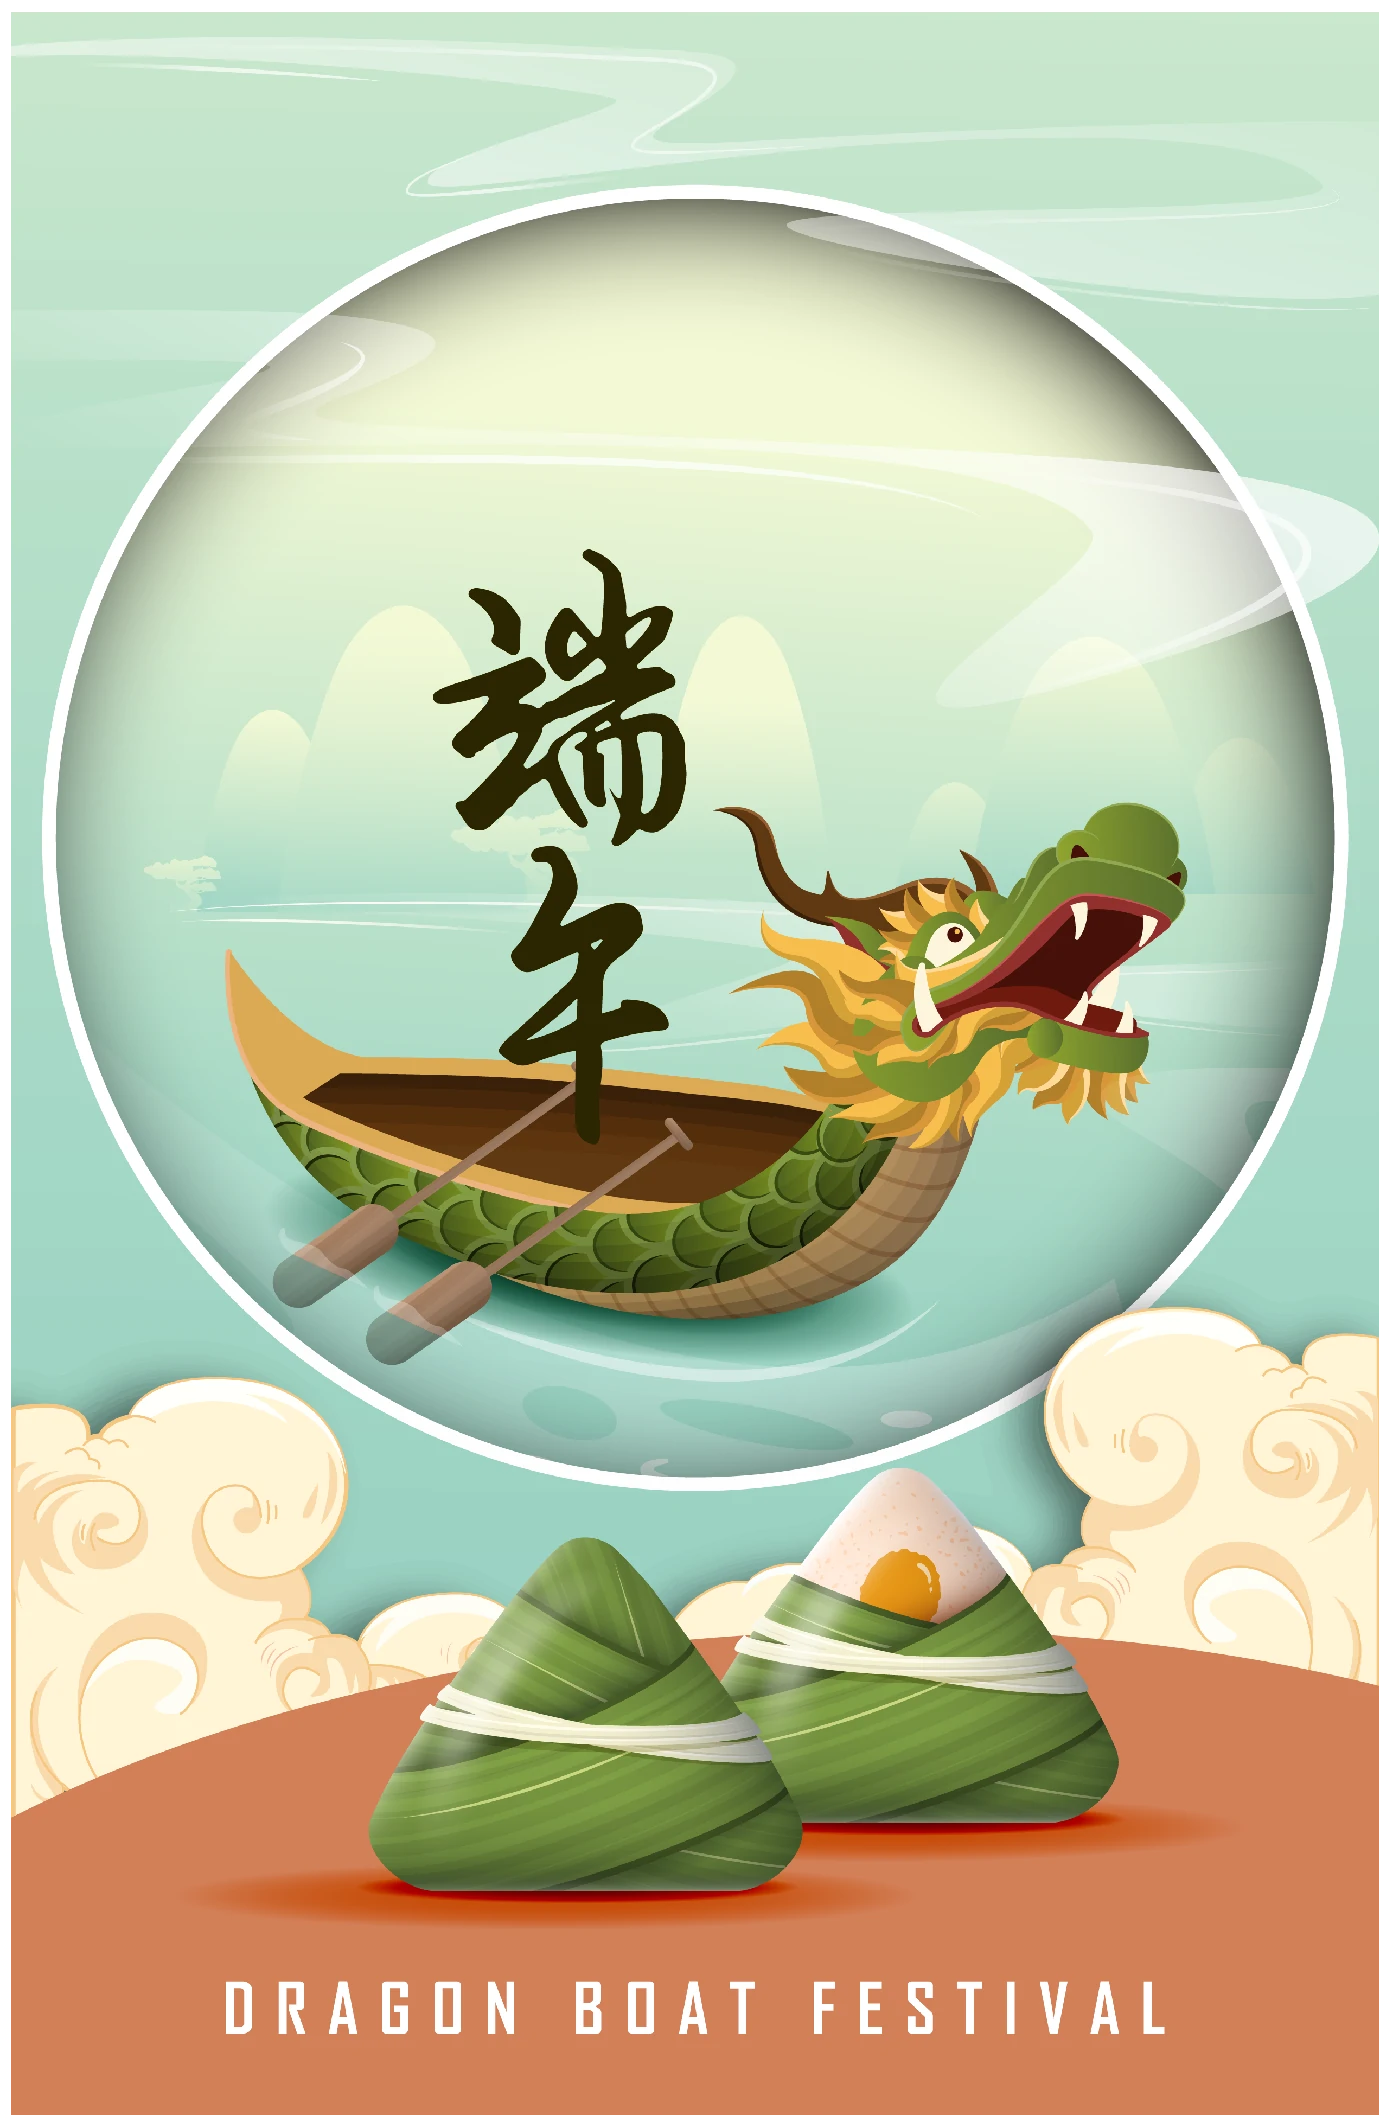 中国传统节日端午节端午安康赛龙舟包粽子插画海报AI矢量设计素材【019】